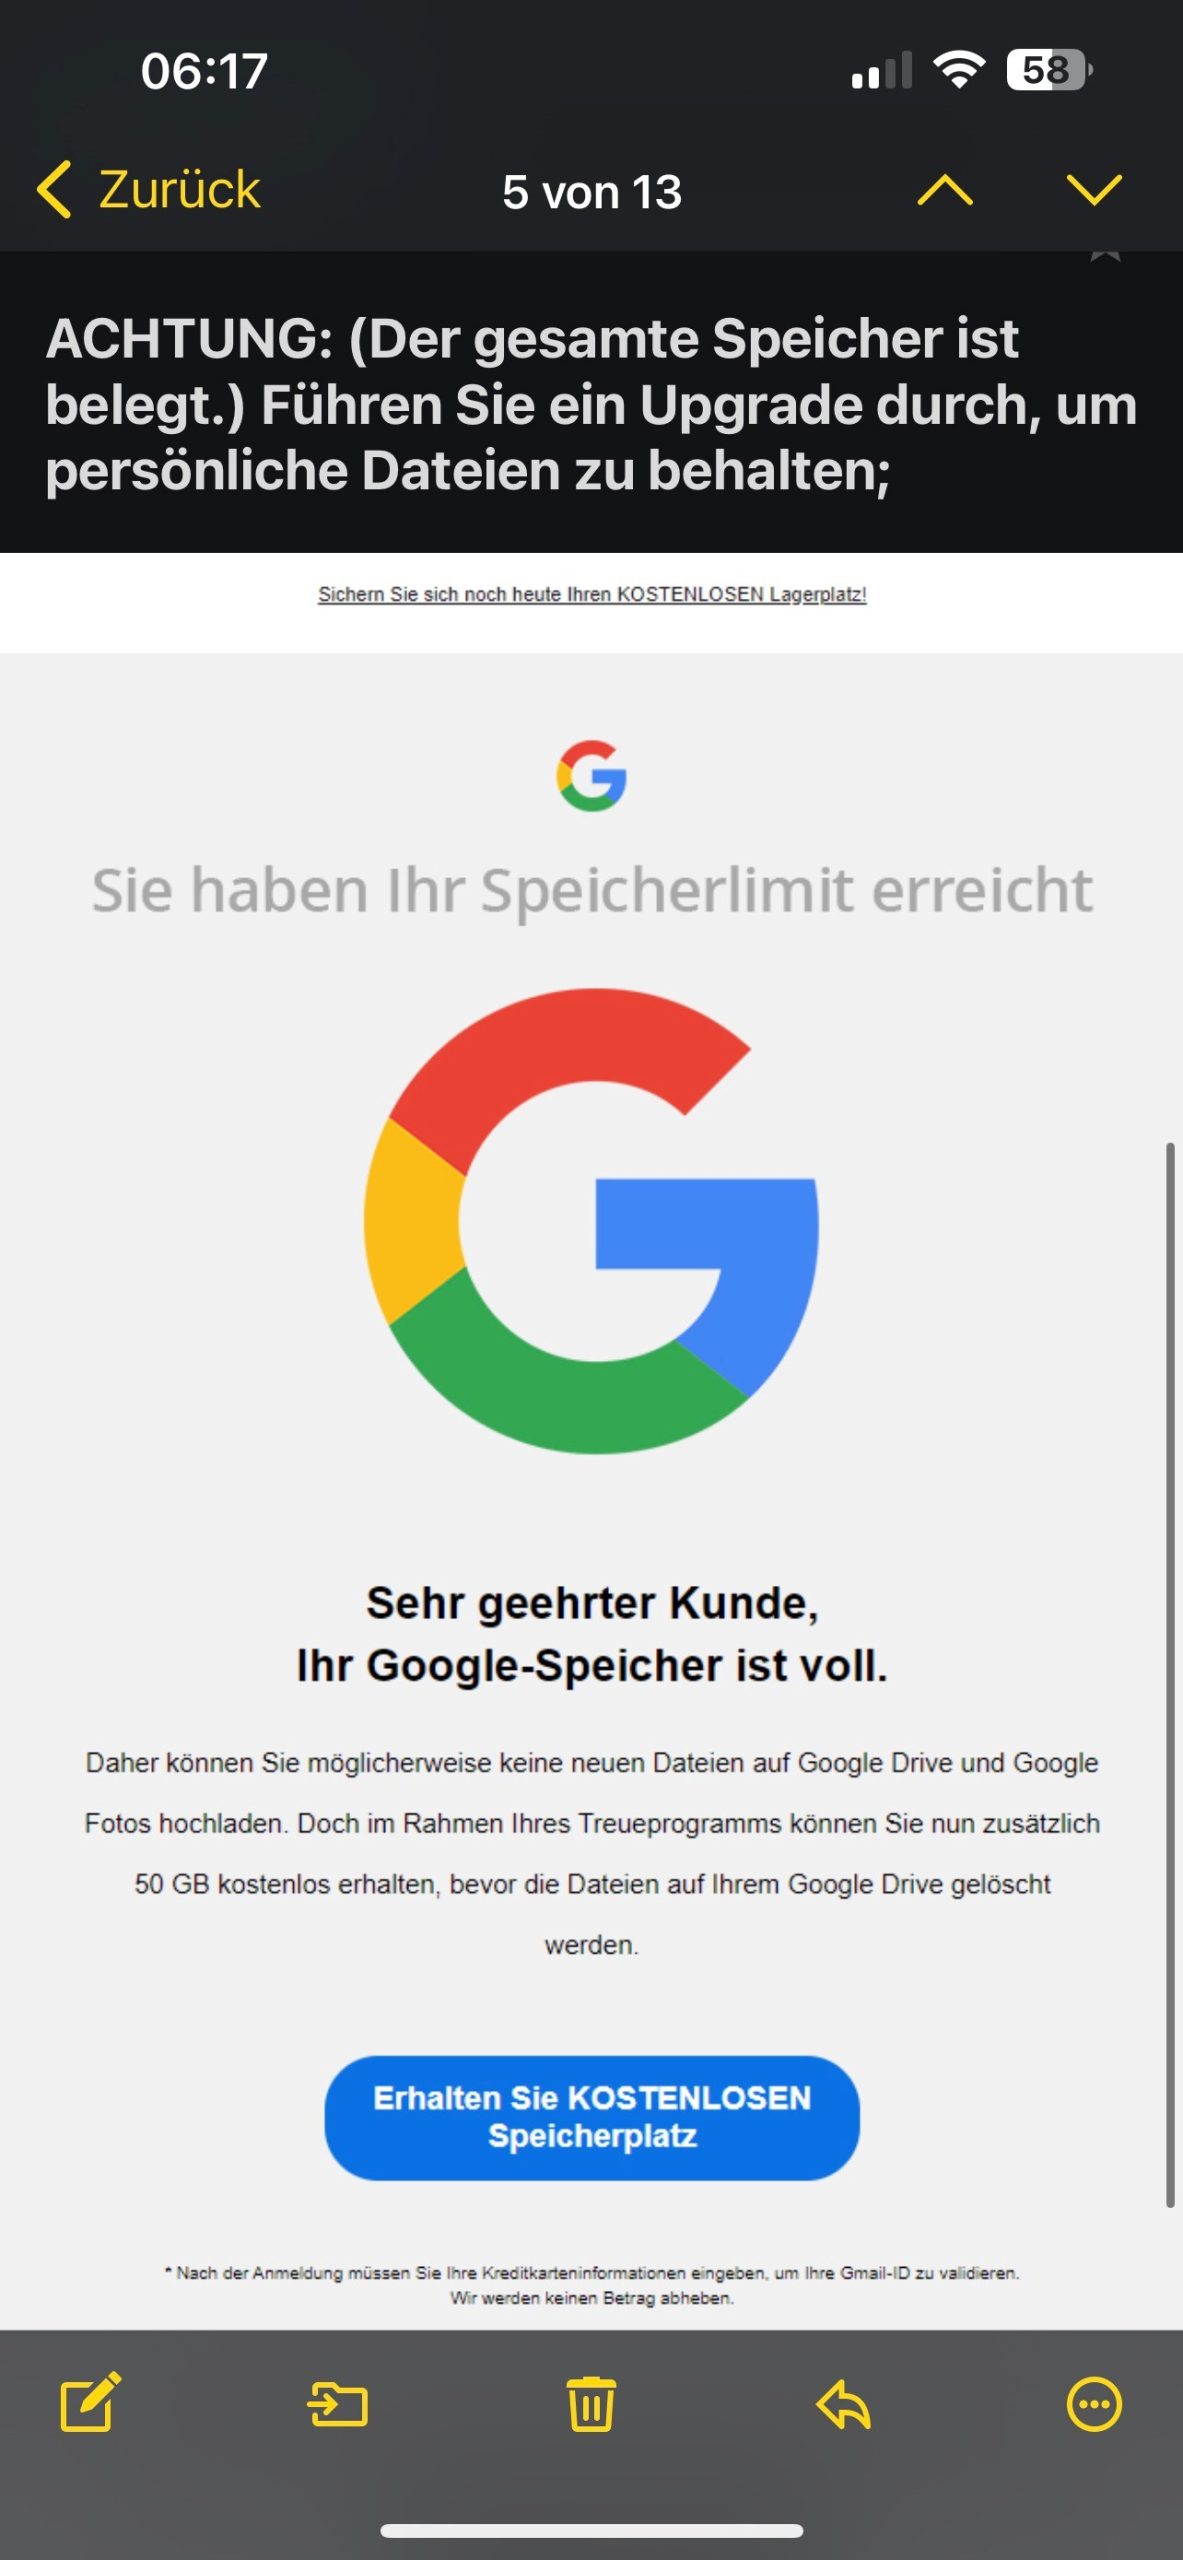 Gefälschte Mail mit Verwendung des Google-Logos